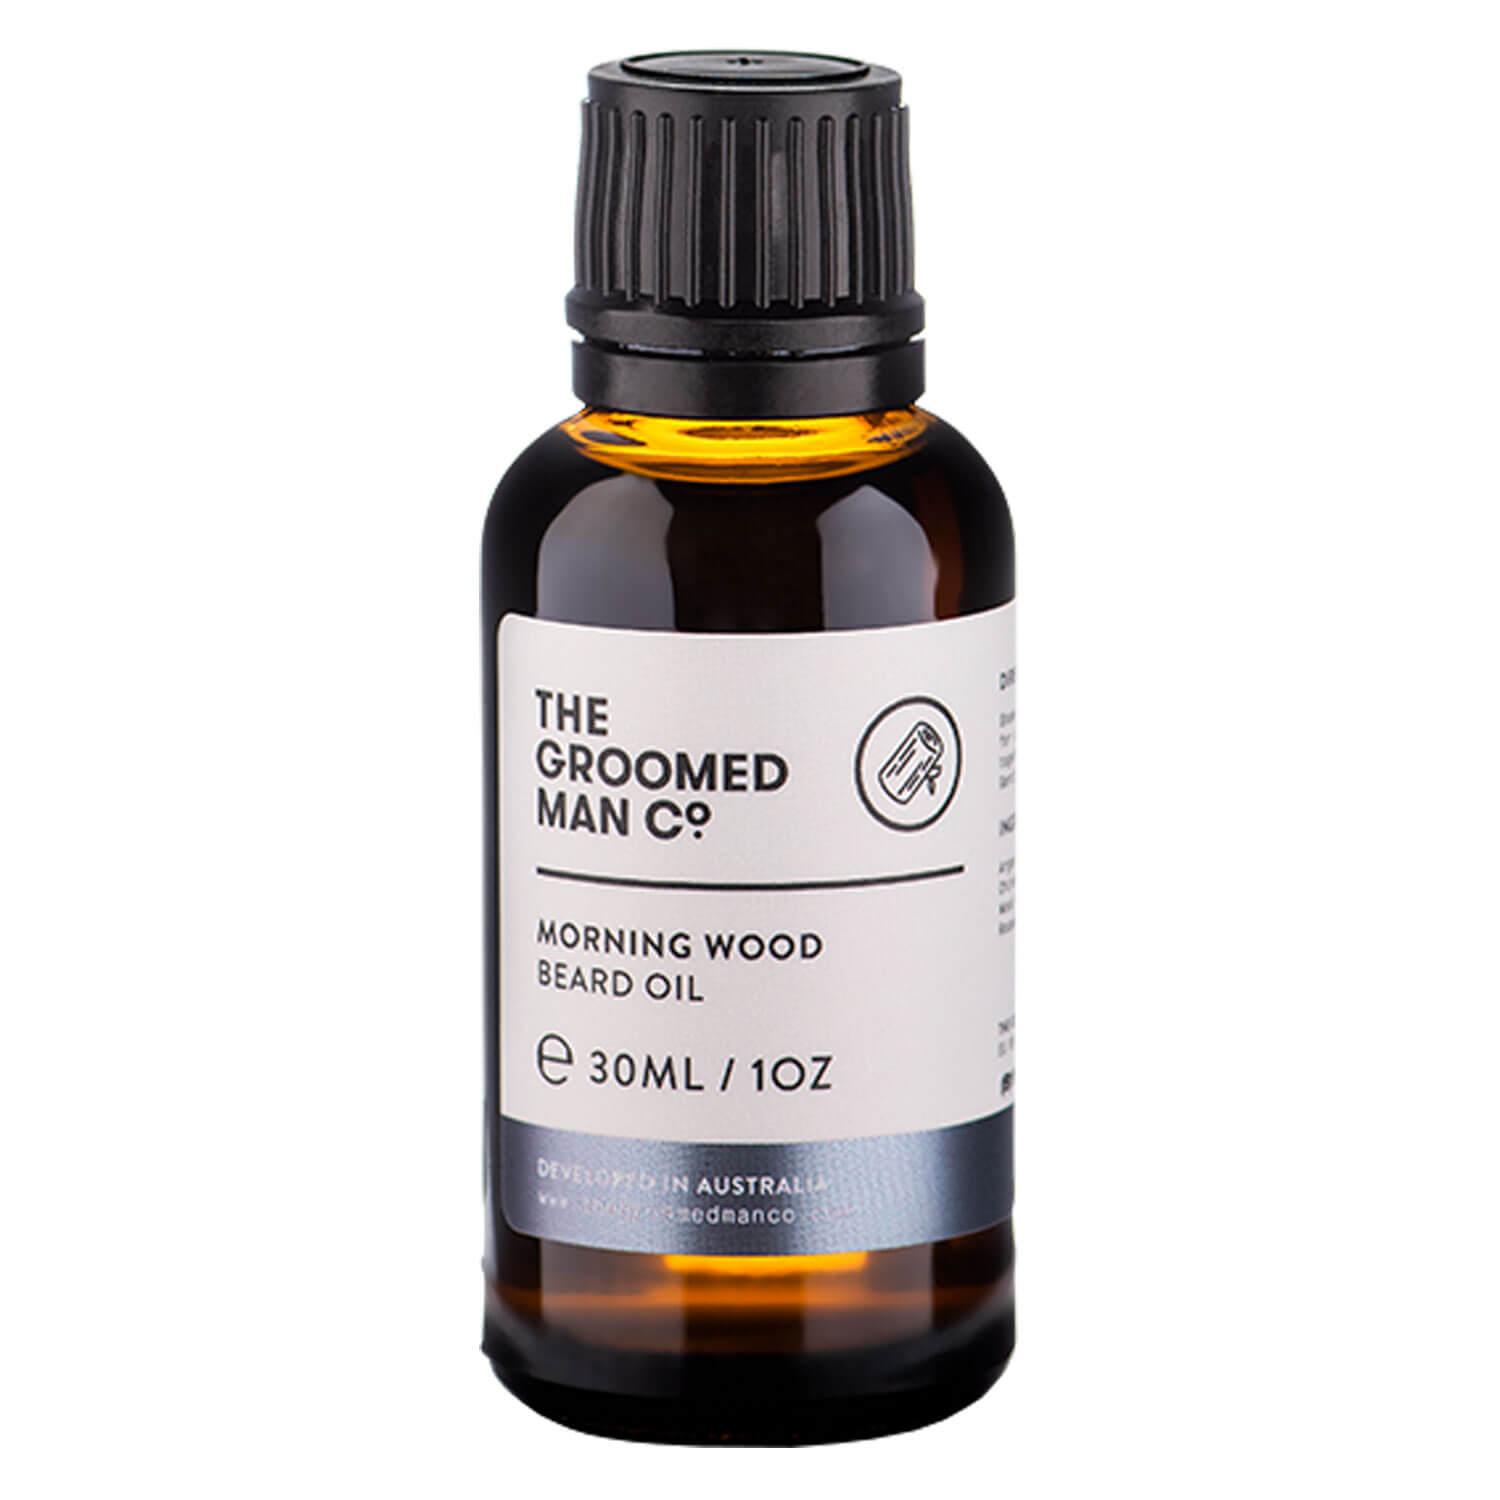 THE GROOMED MAN CO. - Morning Wood Beard Oil